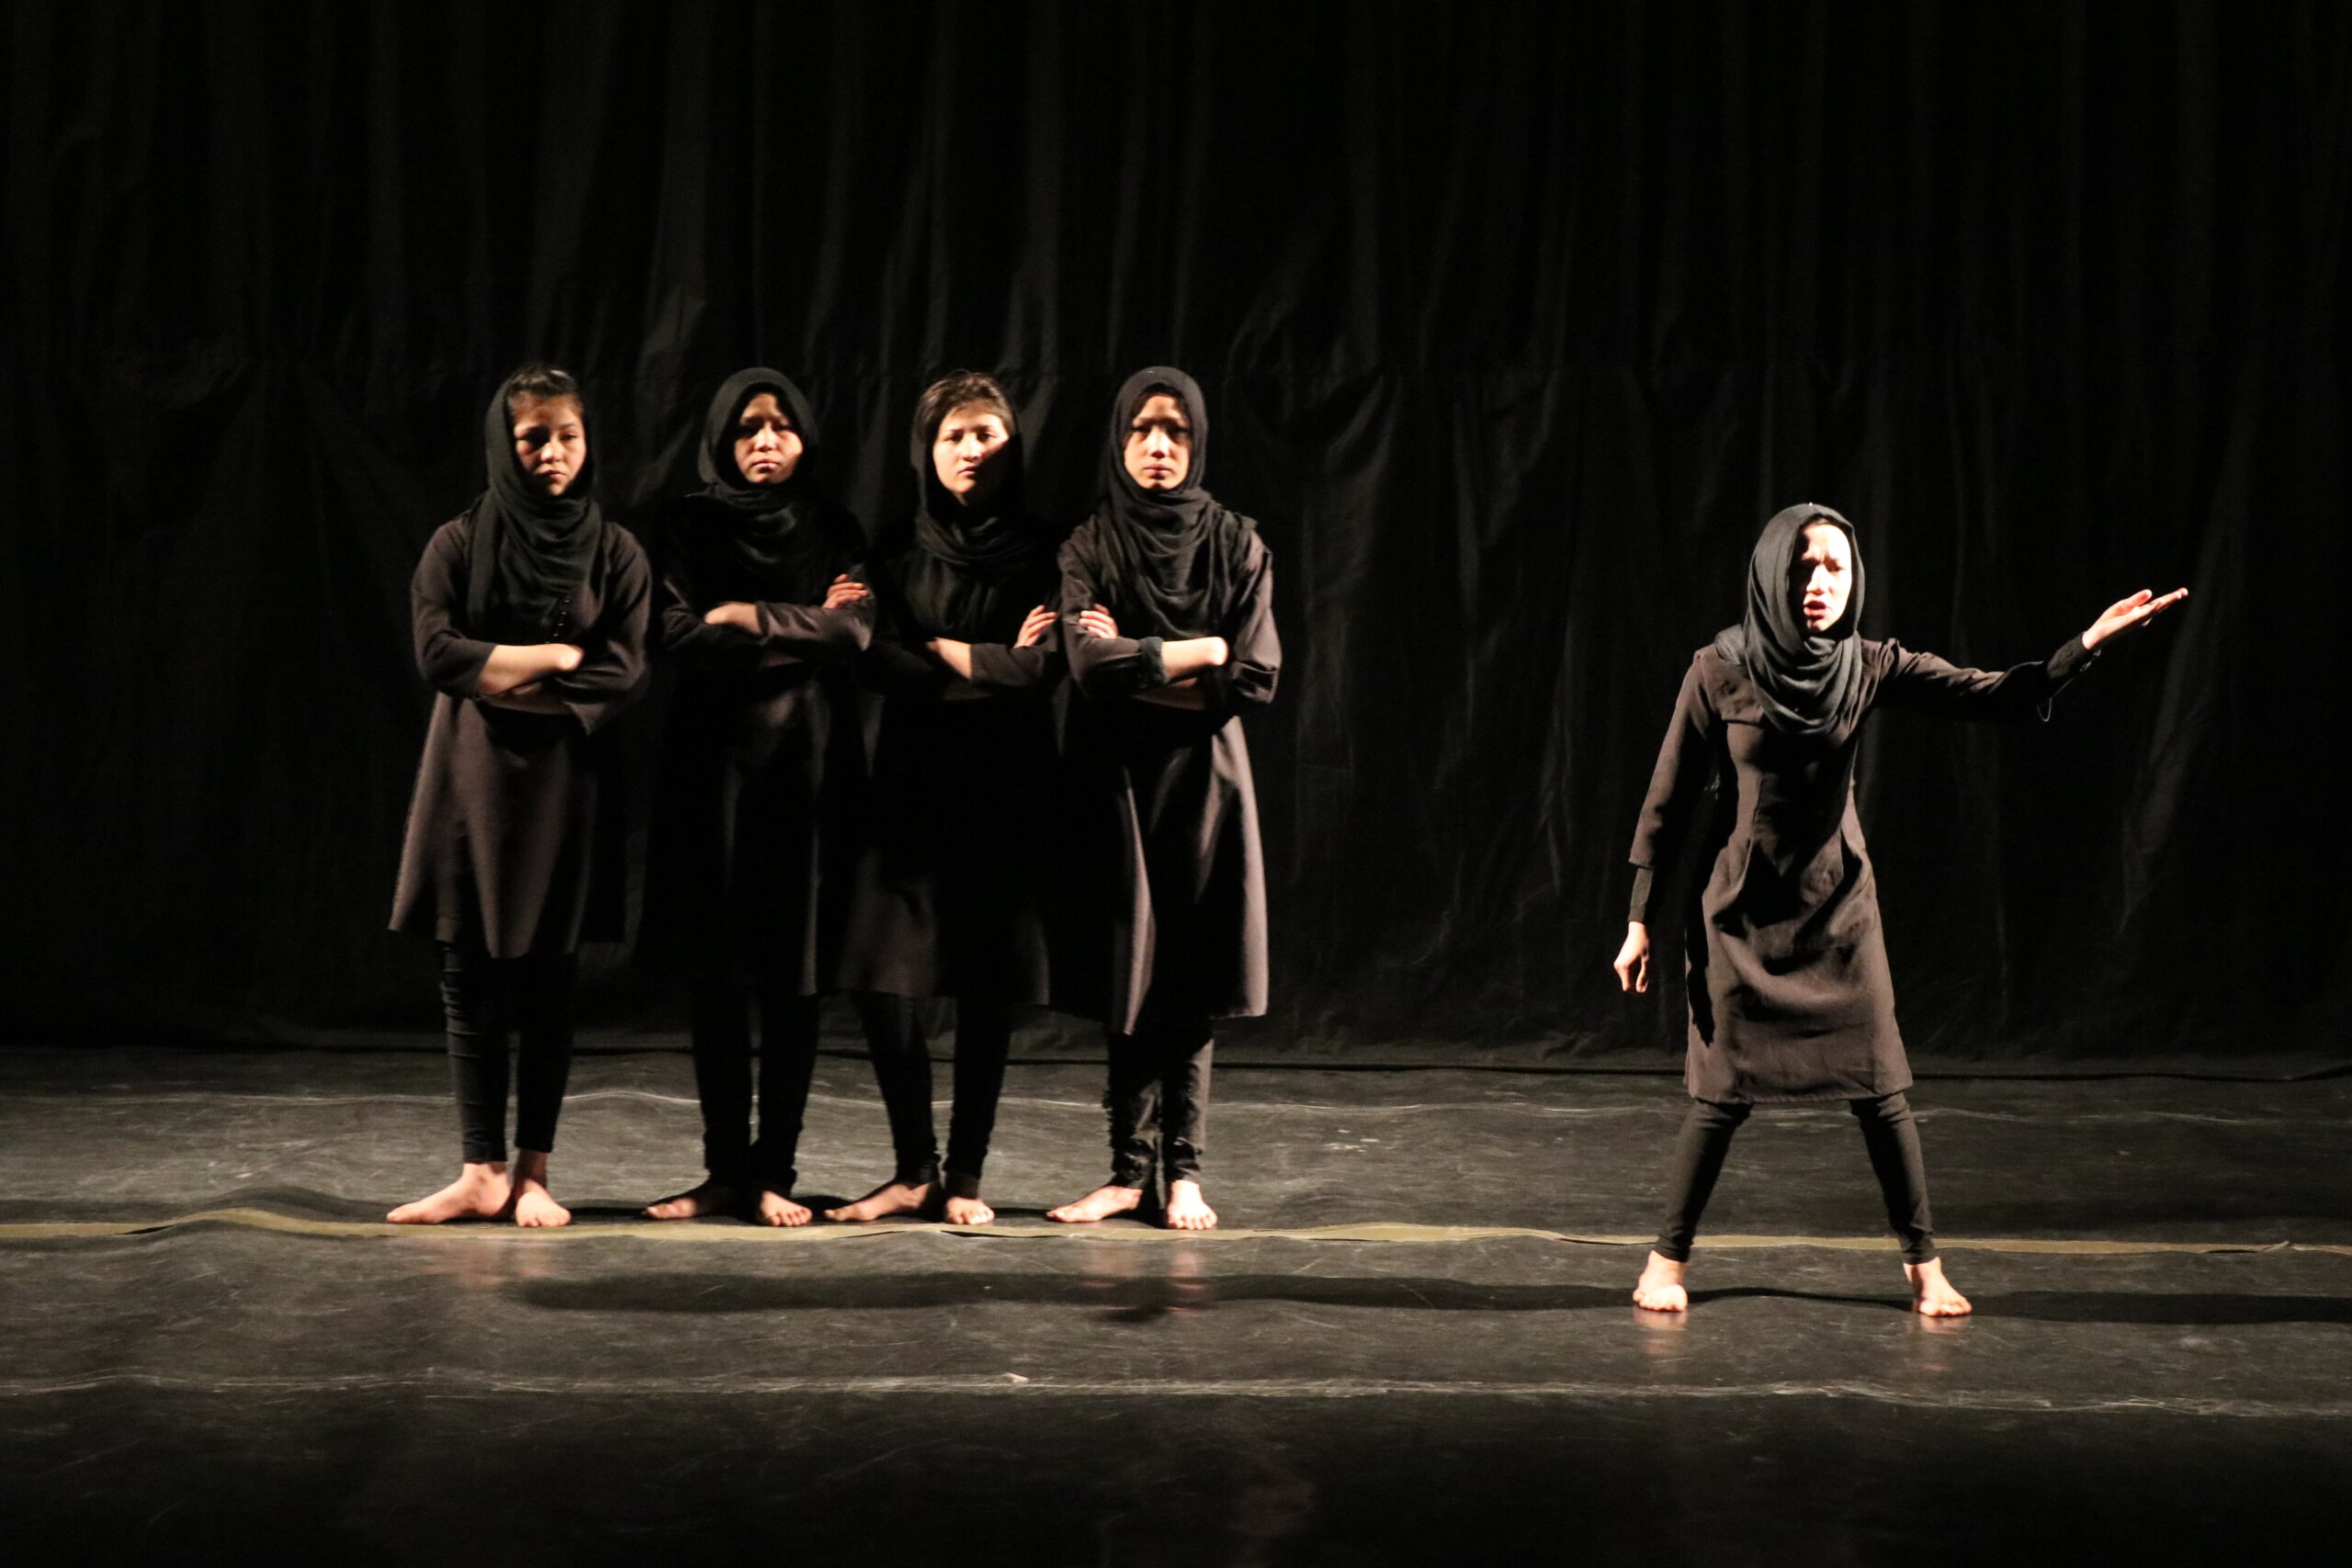 A Lyon, des actrices afghanes réfugiées au théâtre : « Quand nous jouions, nos familles n’étaient pas au courant »